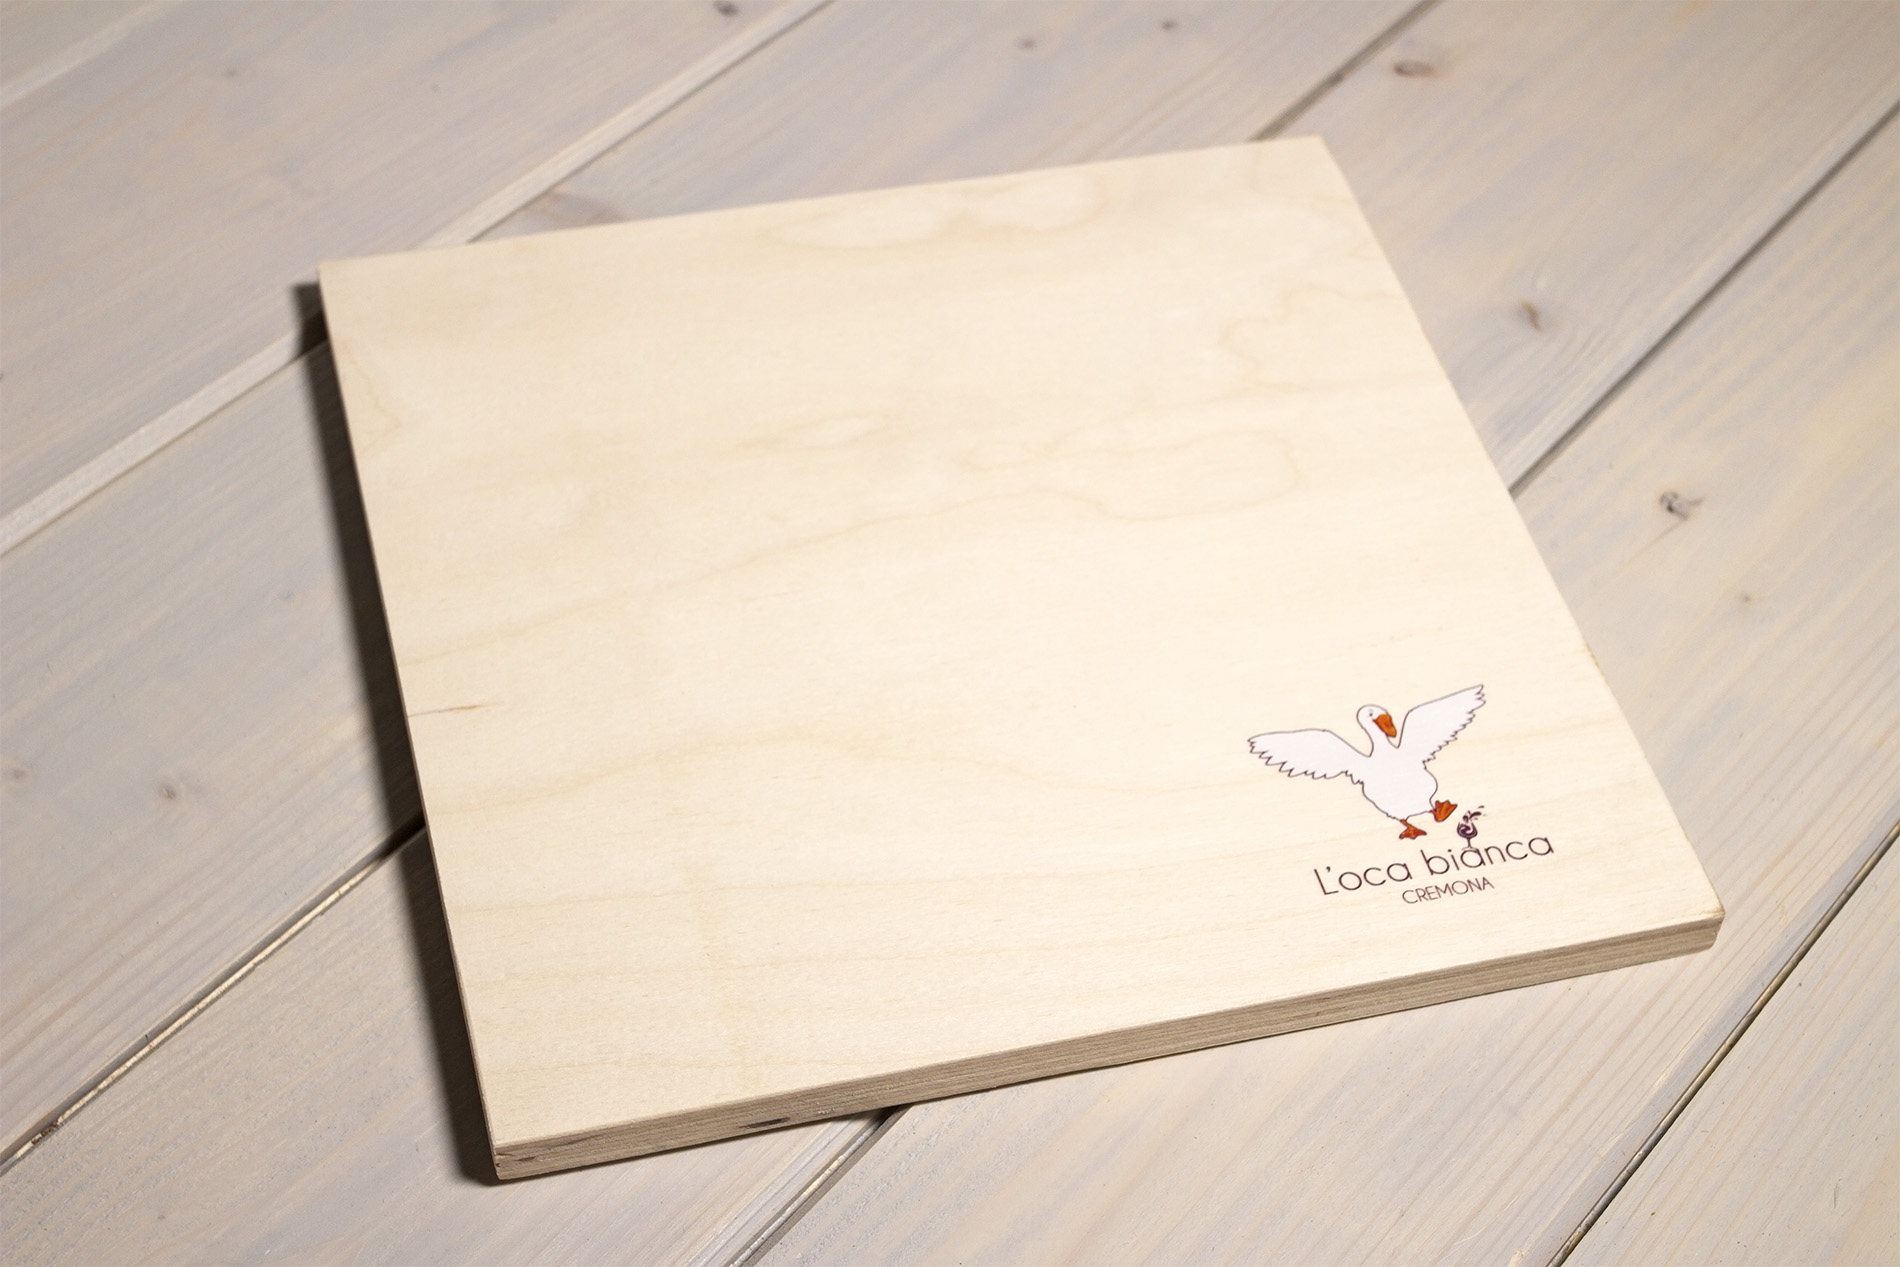 Chianchiere - Tagliere in legno personalizzato - L'Oca Bianca